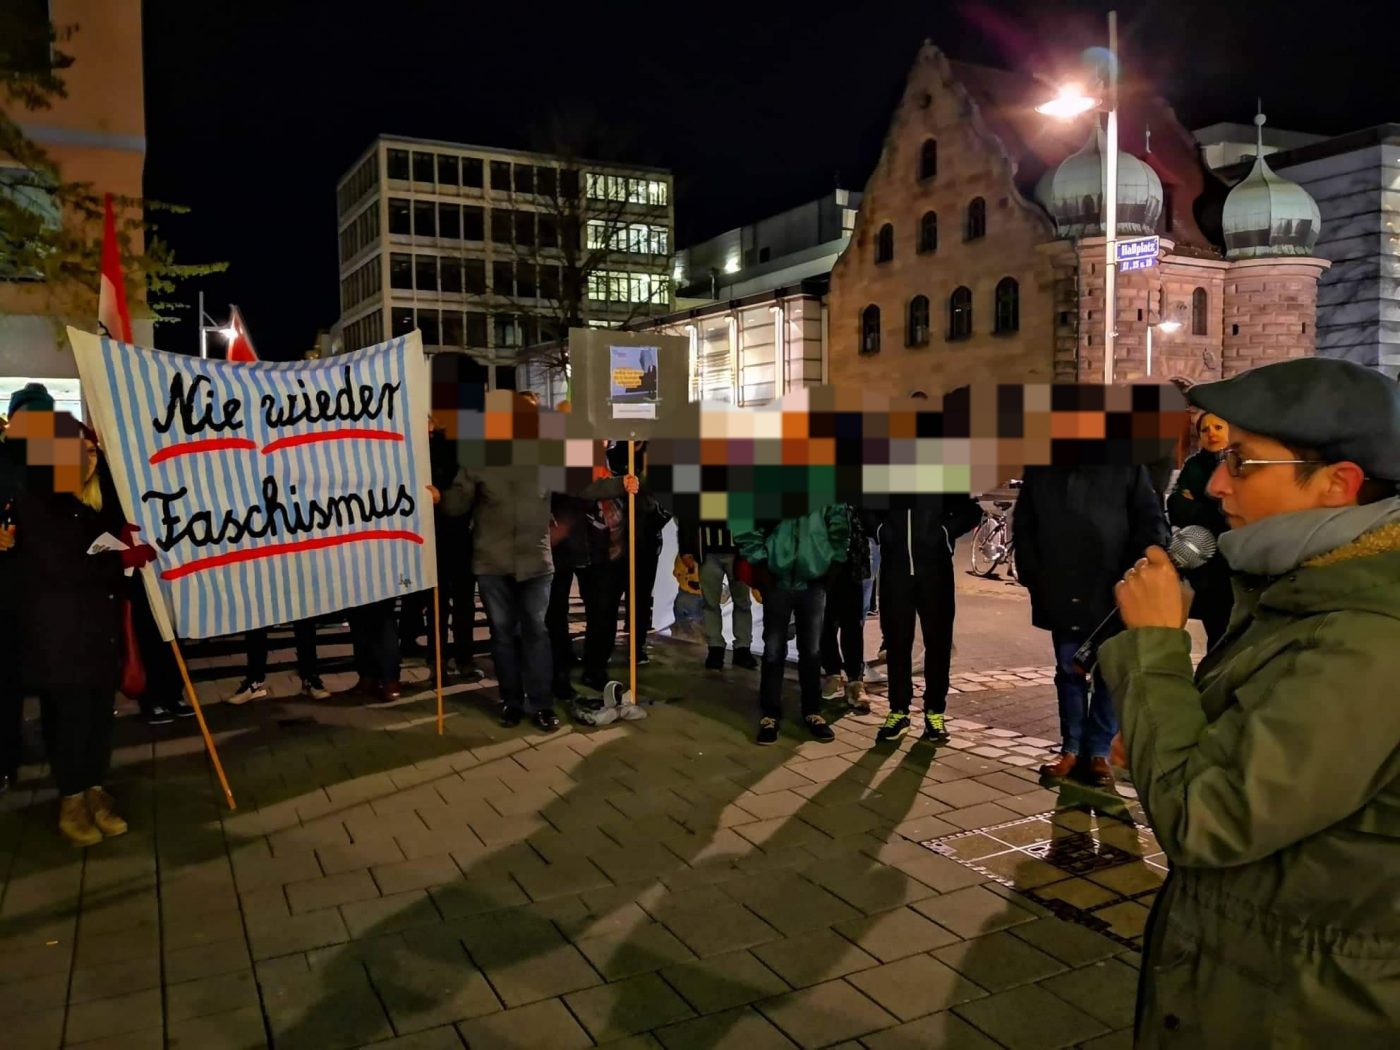 Demonstration in Nürnberg. Sprecherin Christine Deutschmann. Bannertext: "Nie wieder Faschismus"